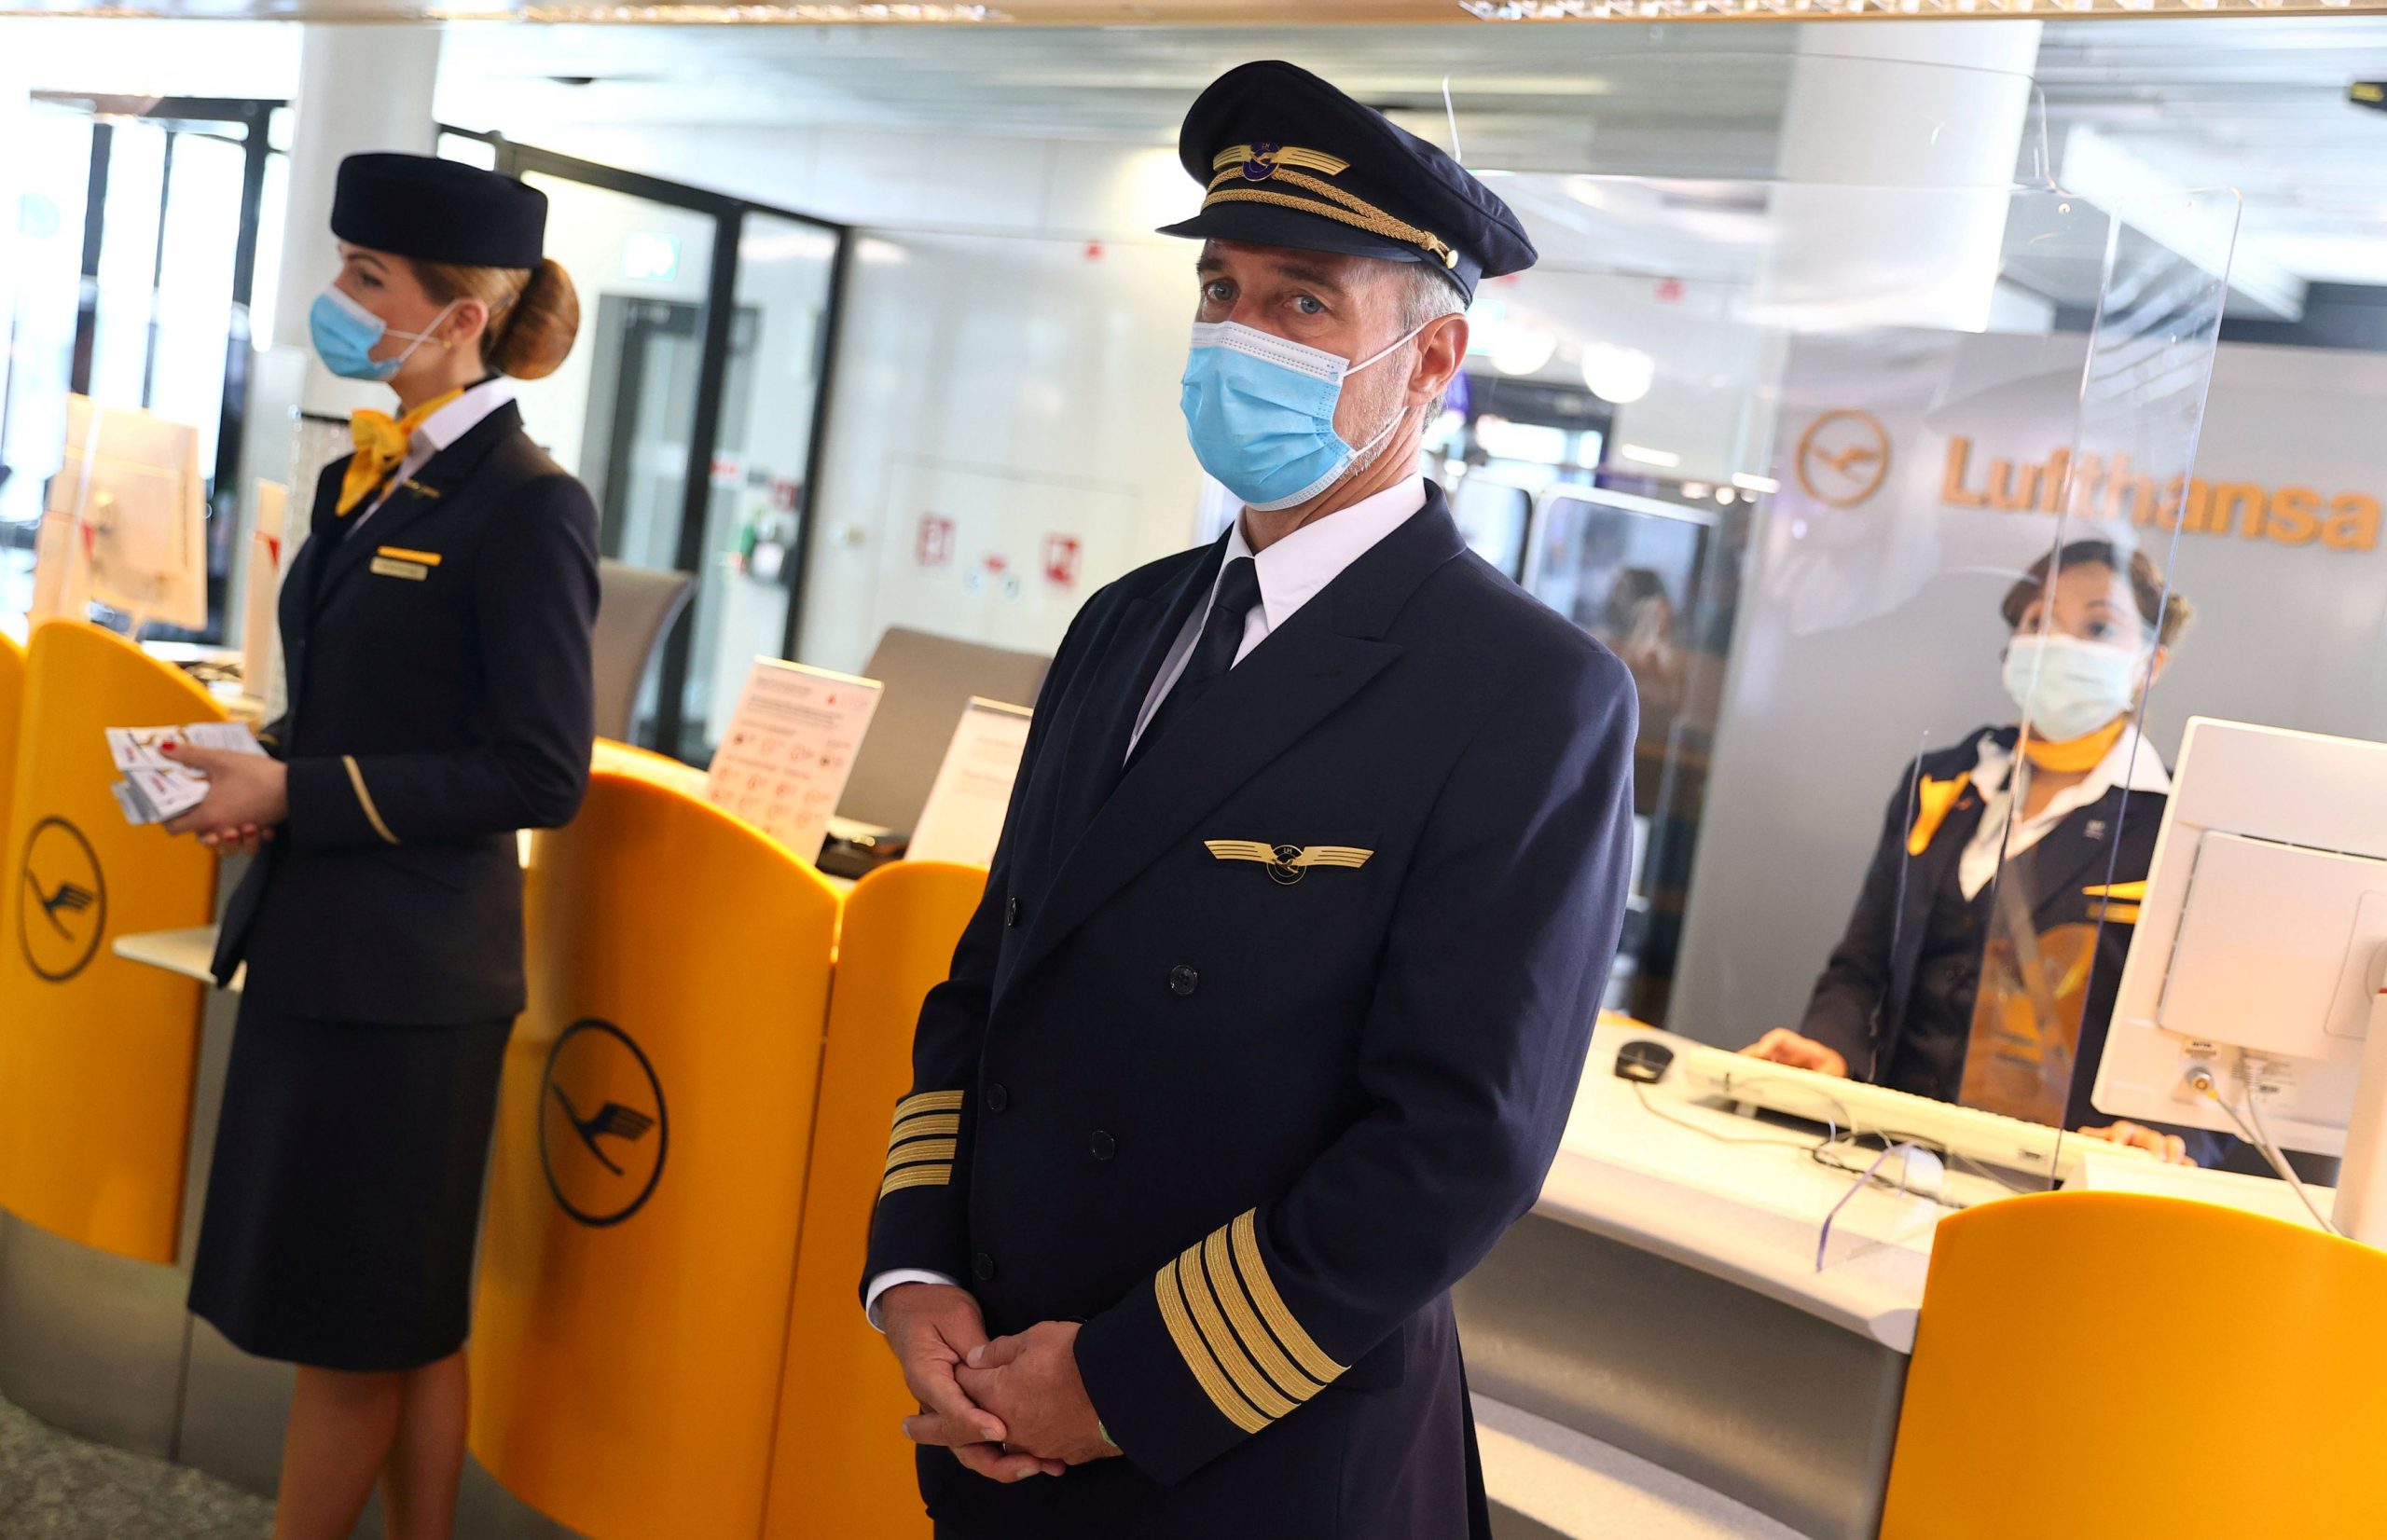 Η Lufthansa αλλάζει τον τρόπο υποδοχής των επιβατών υιοθετώντας το ουδέτερο φύλο